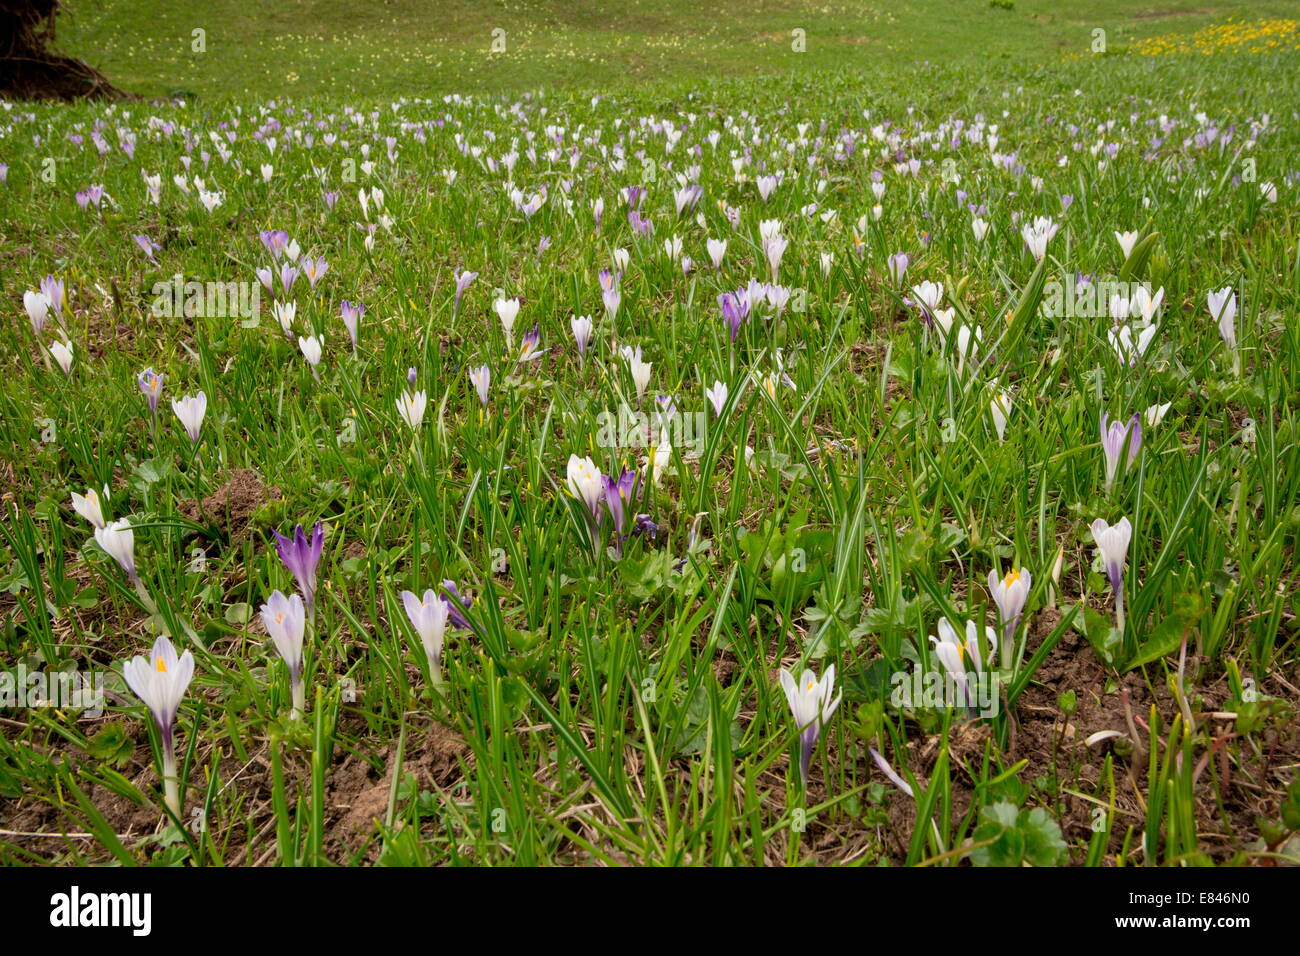 White Crocus or Spring Crocus, Crocus albiflorus in masses at c. 2000m in the Dolomites, Italy Stock Photo